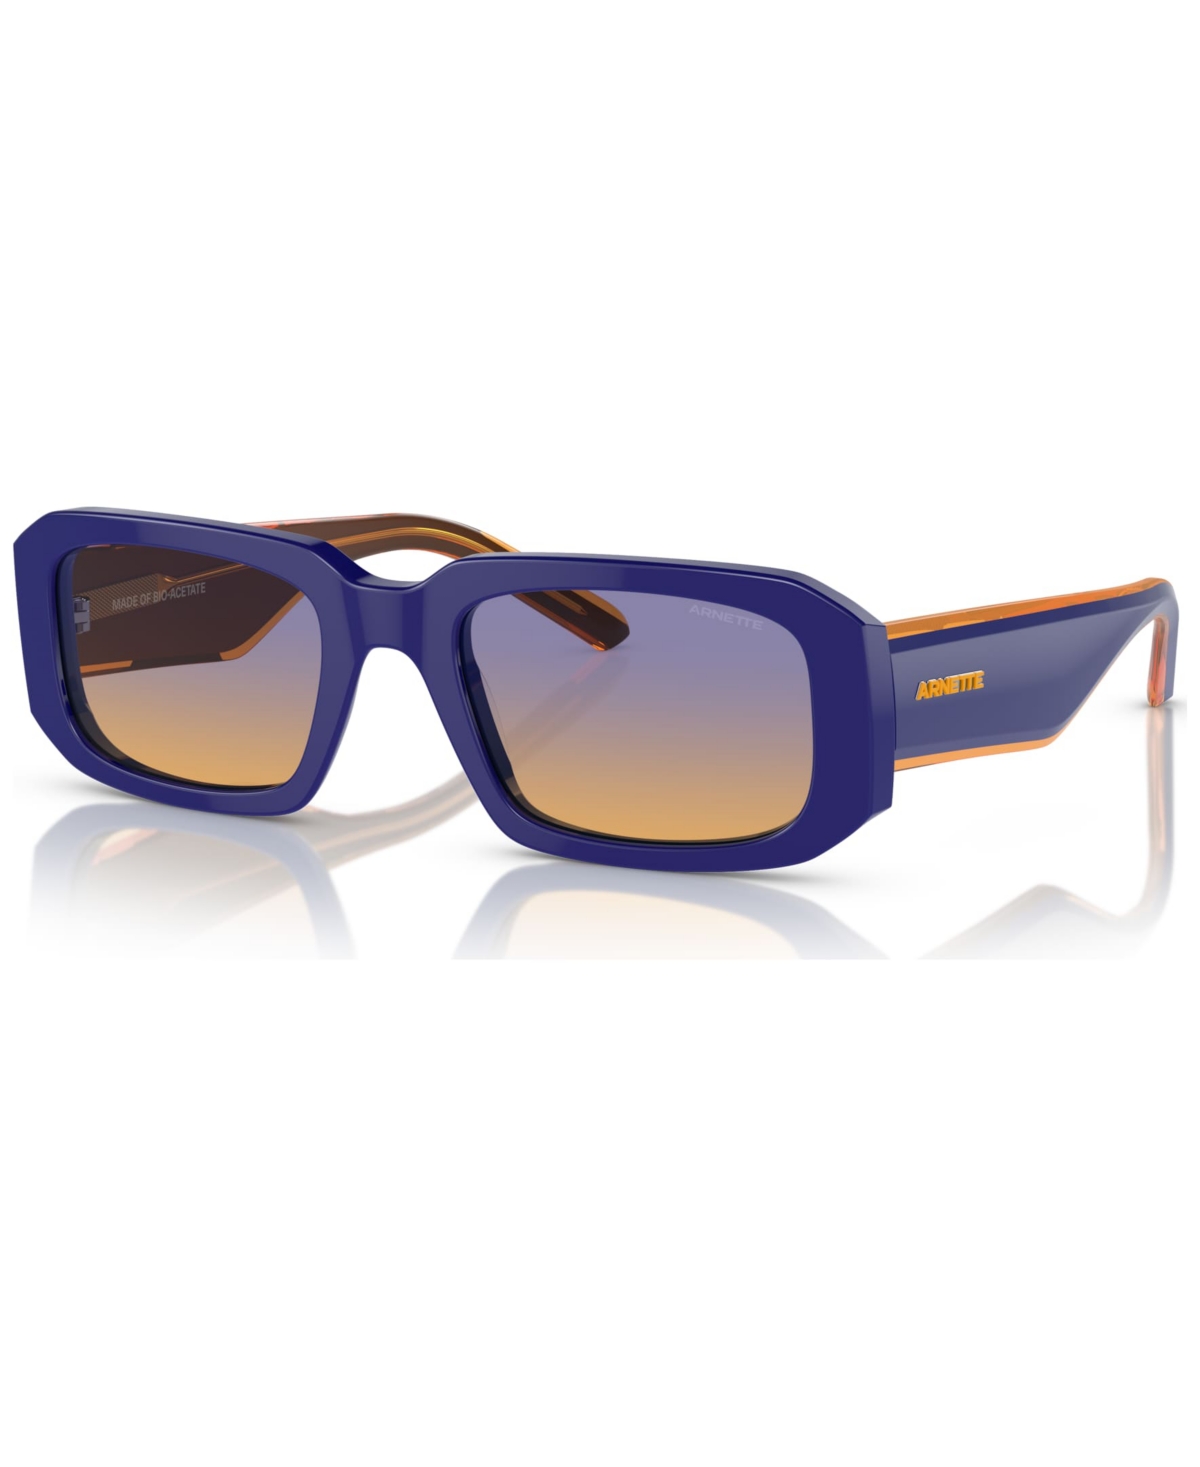 Arnette Men's Thekidd Sunglasses, AN431853-x 53